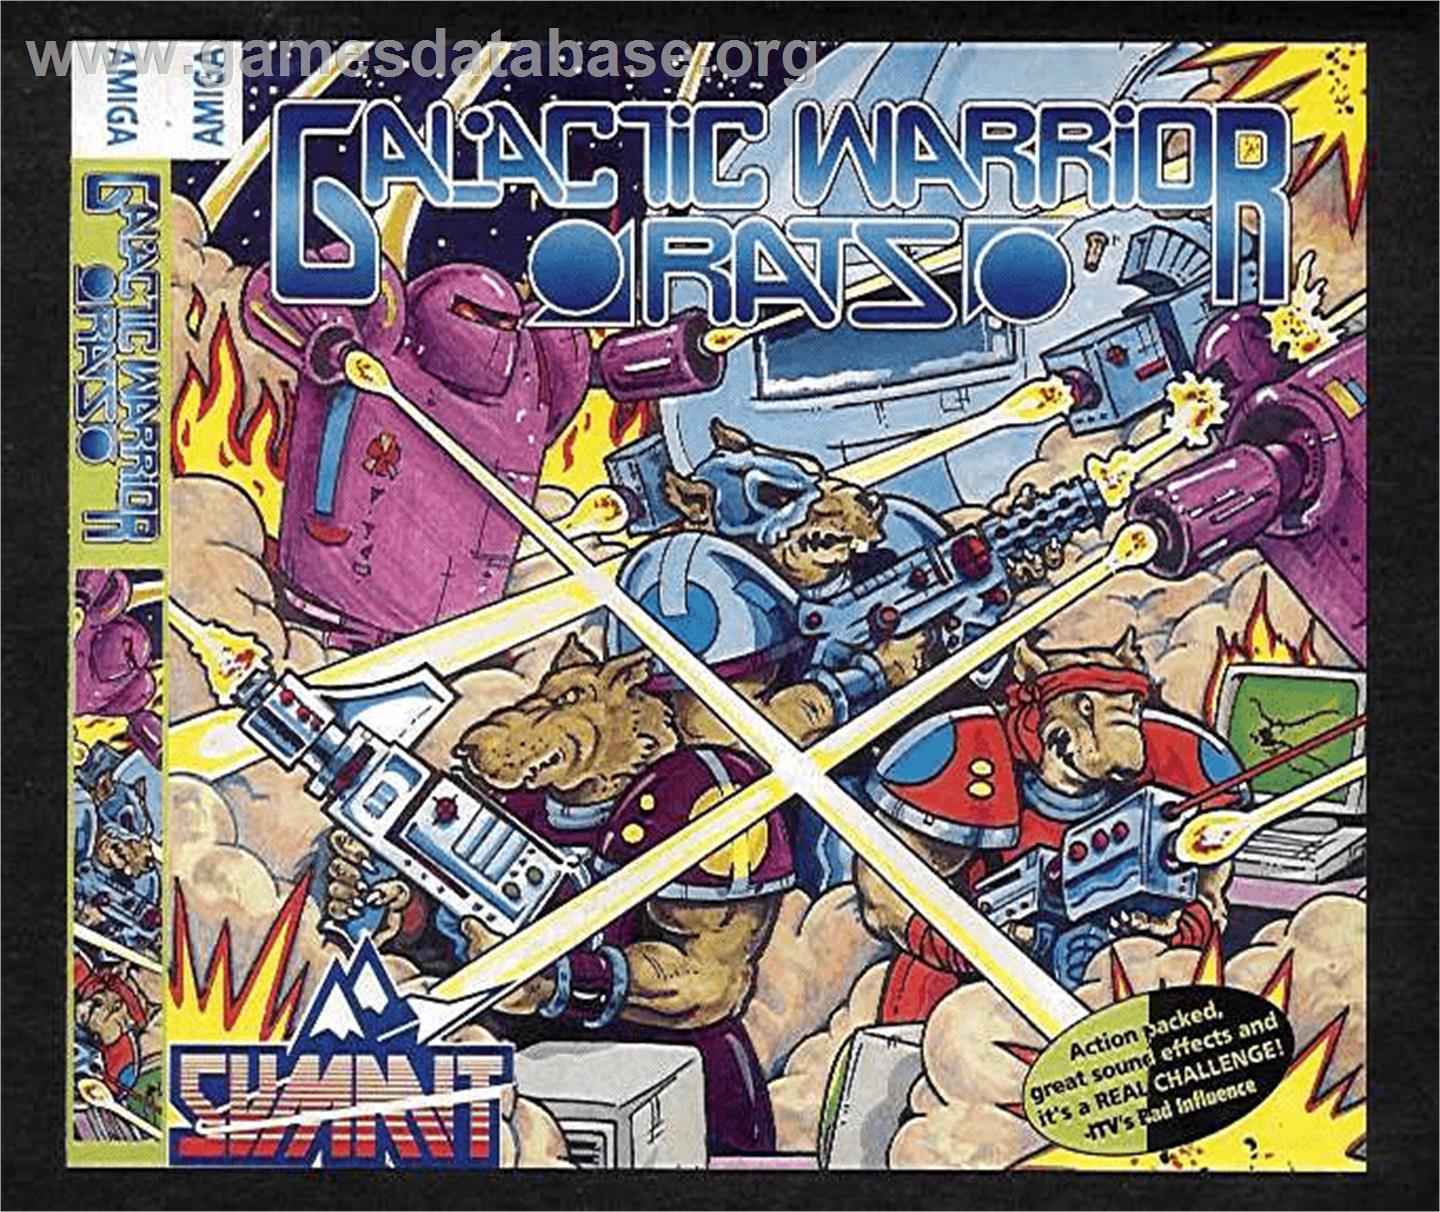 Galactic Warrior Rats - Commodore Amiga - Artwork - Box